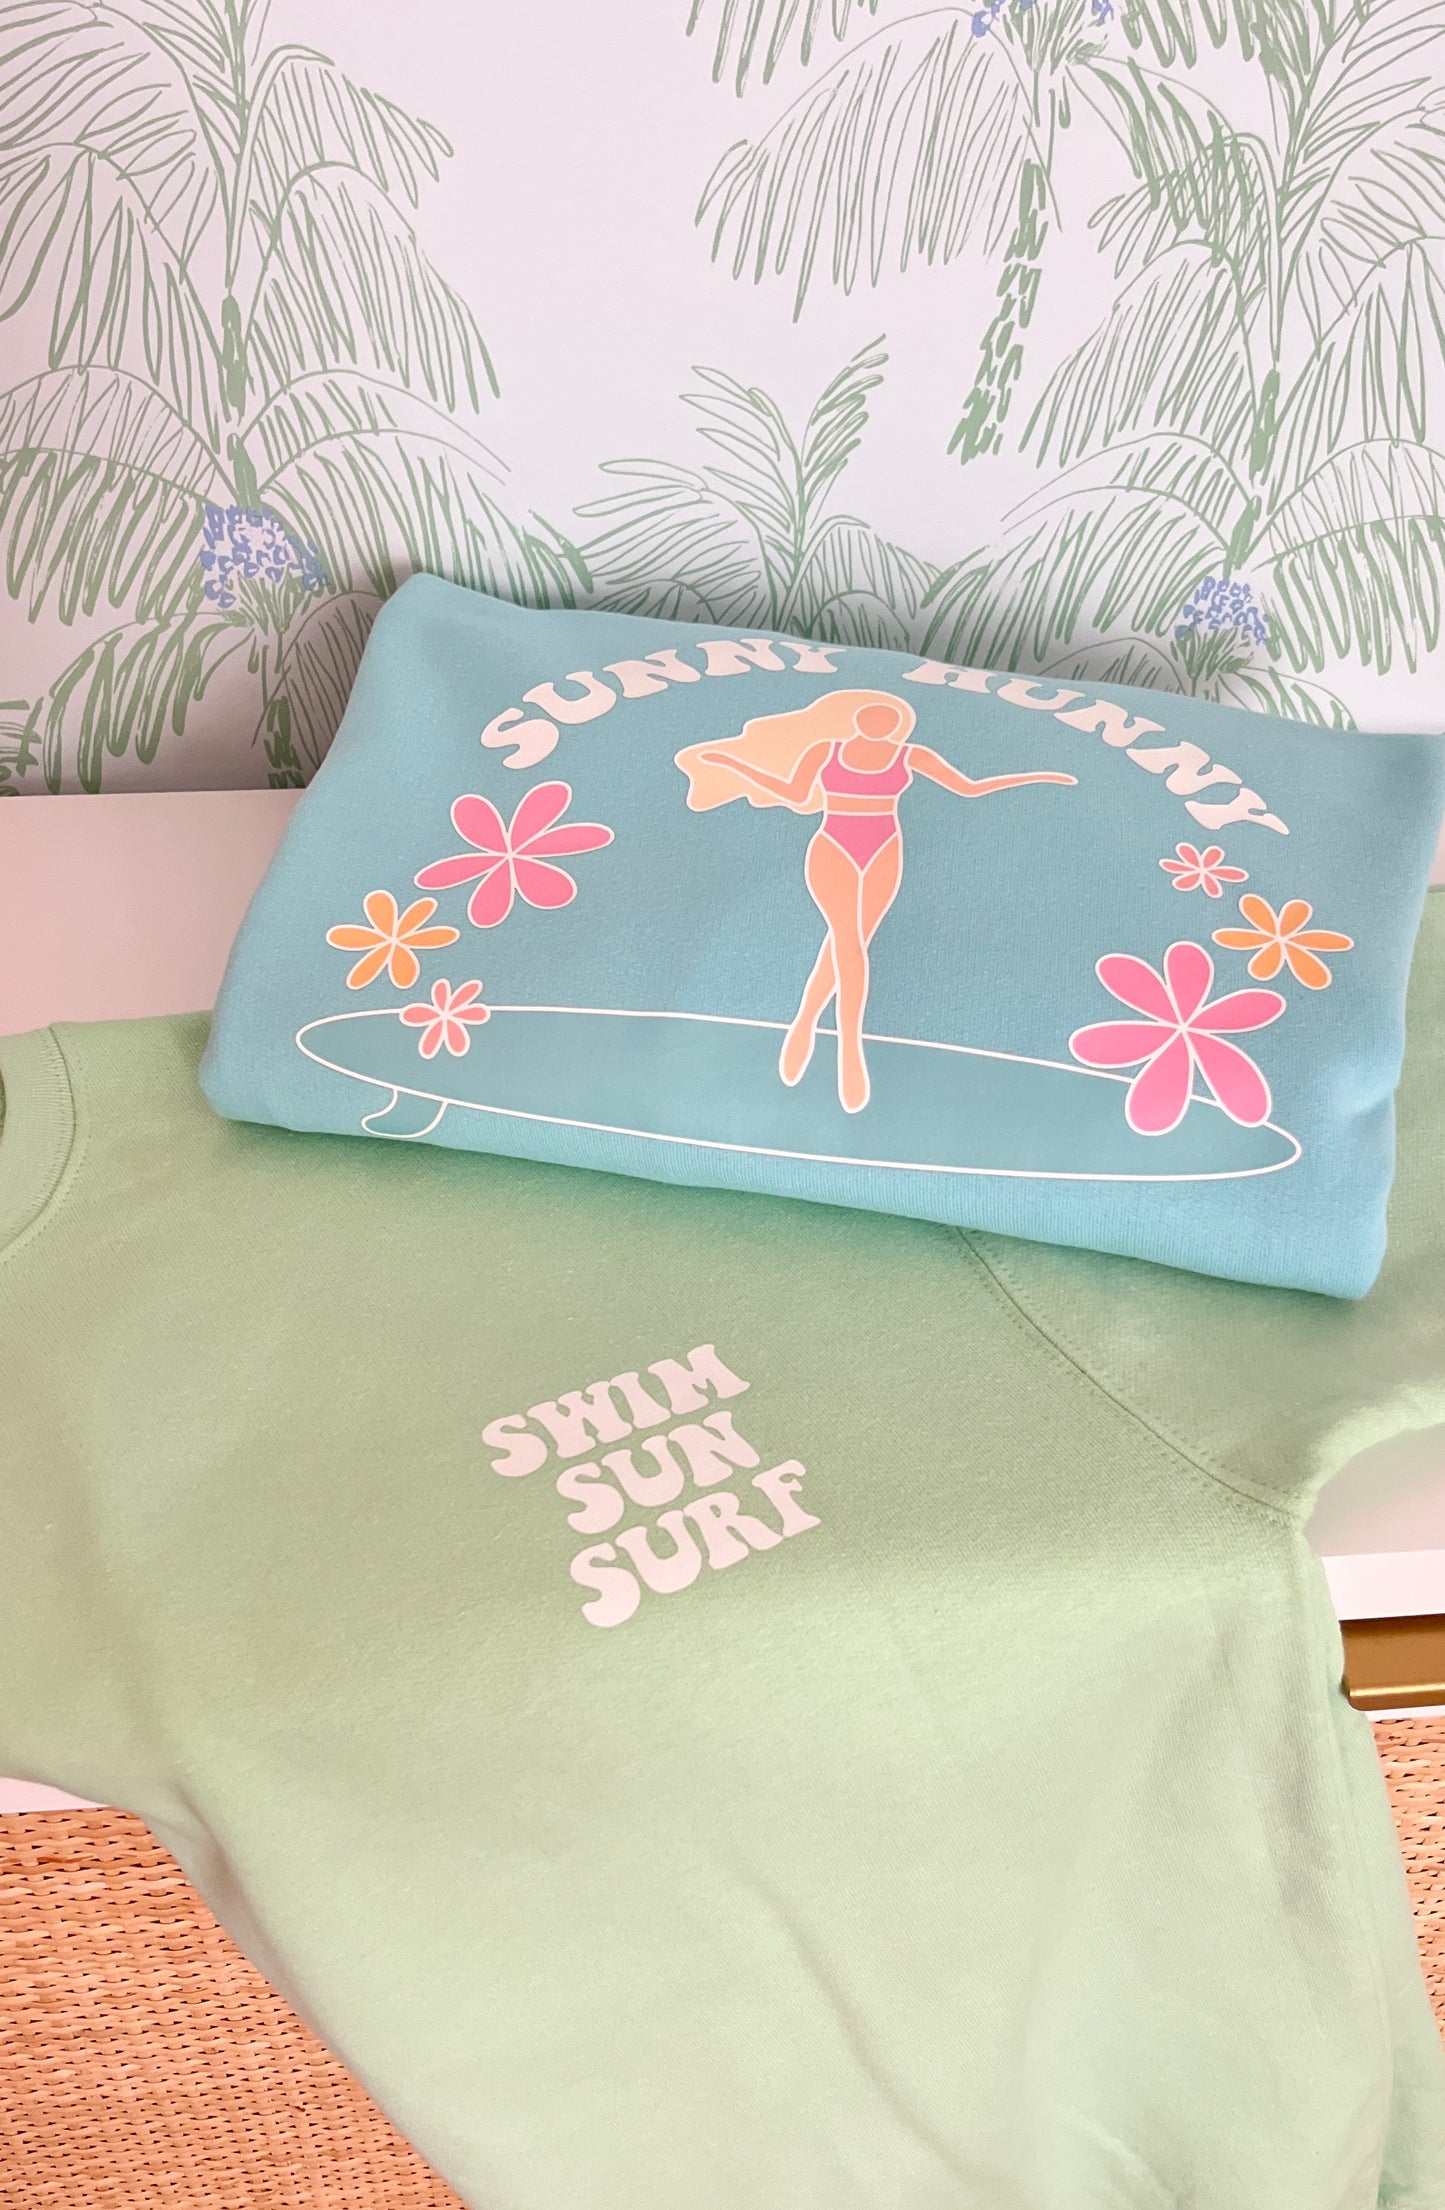 Sunny Hunny “Swim Sun Surf” Crewneck